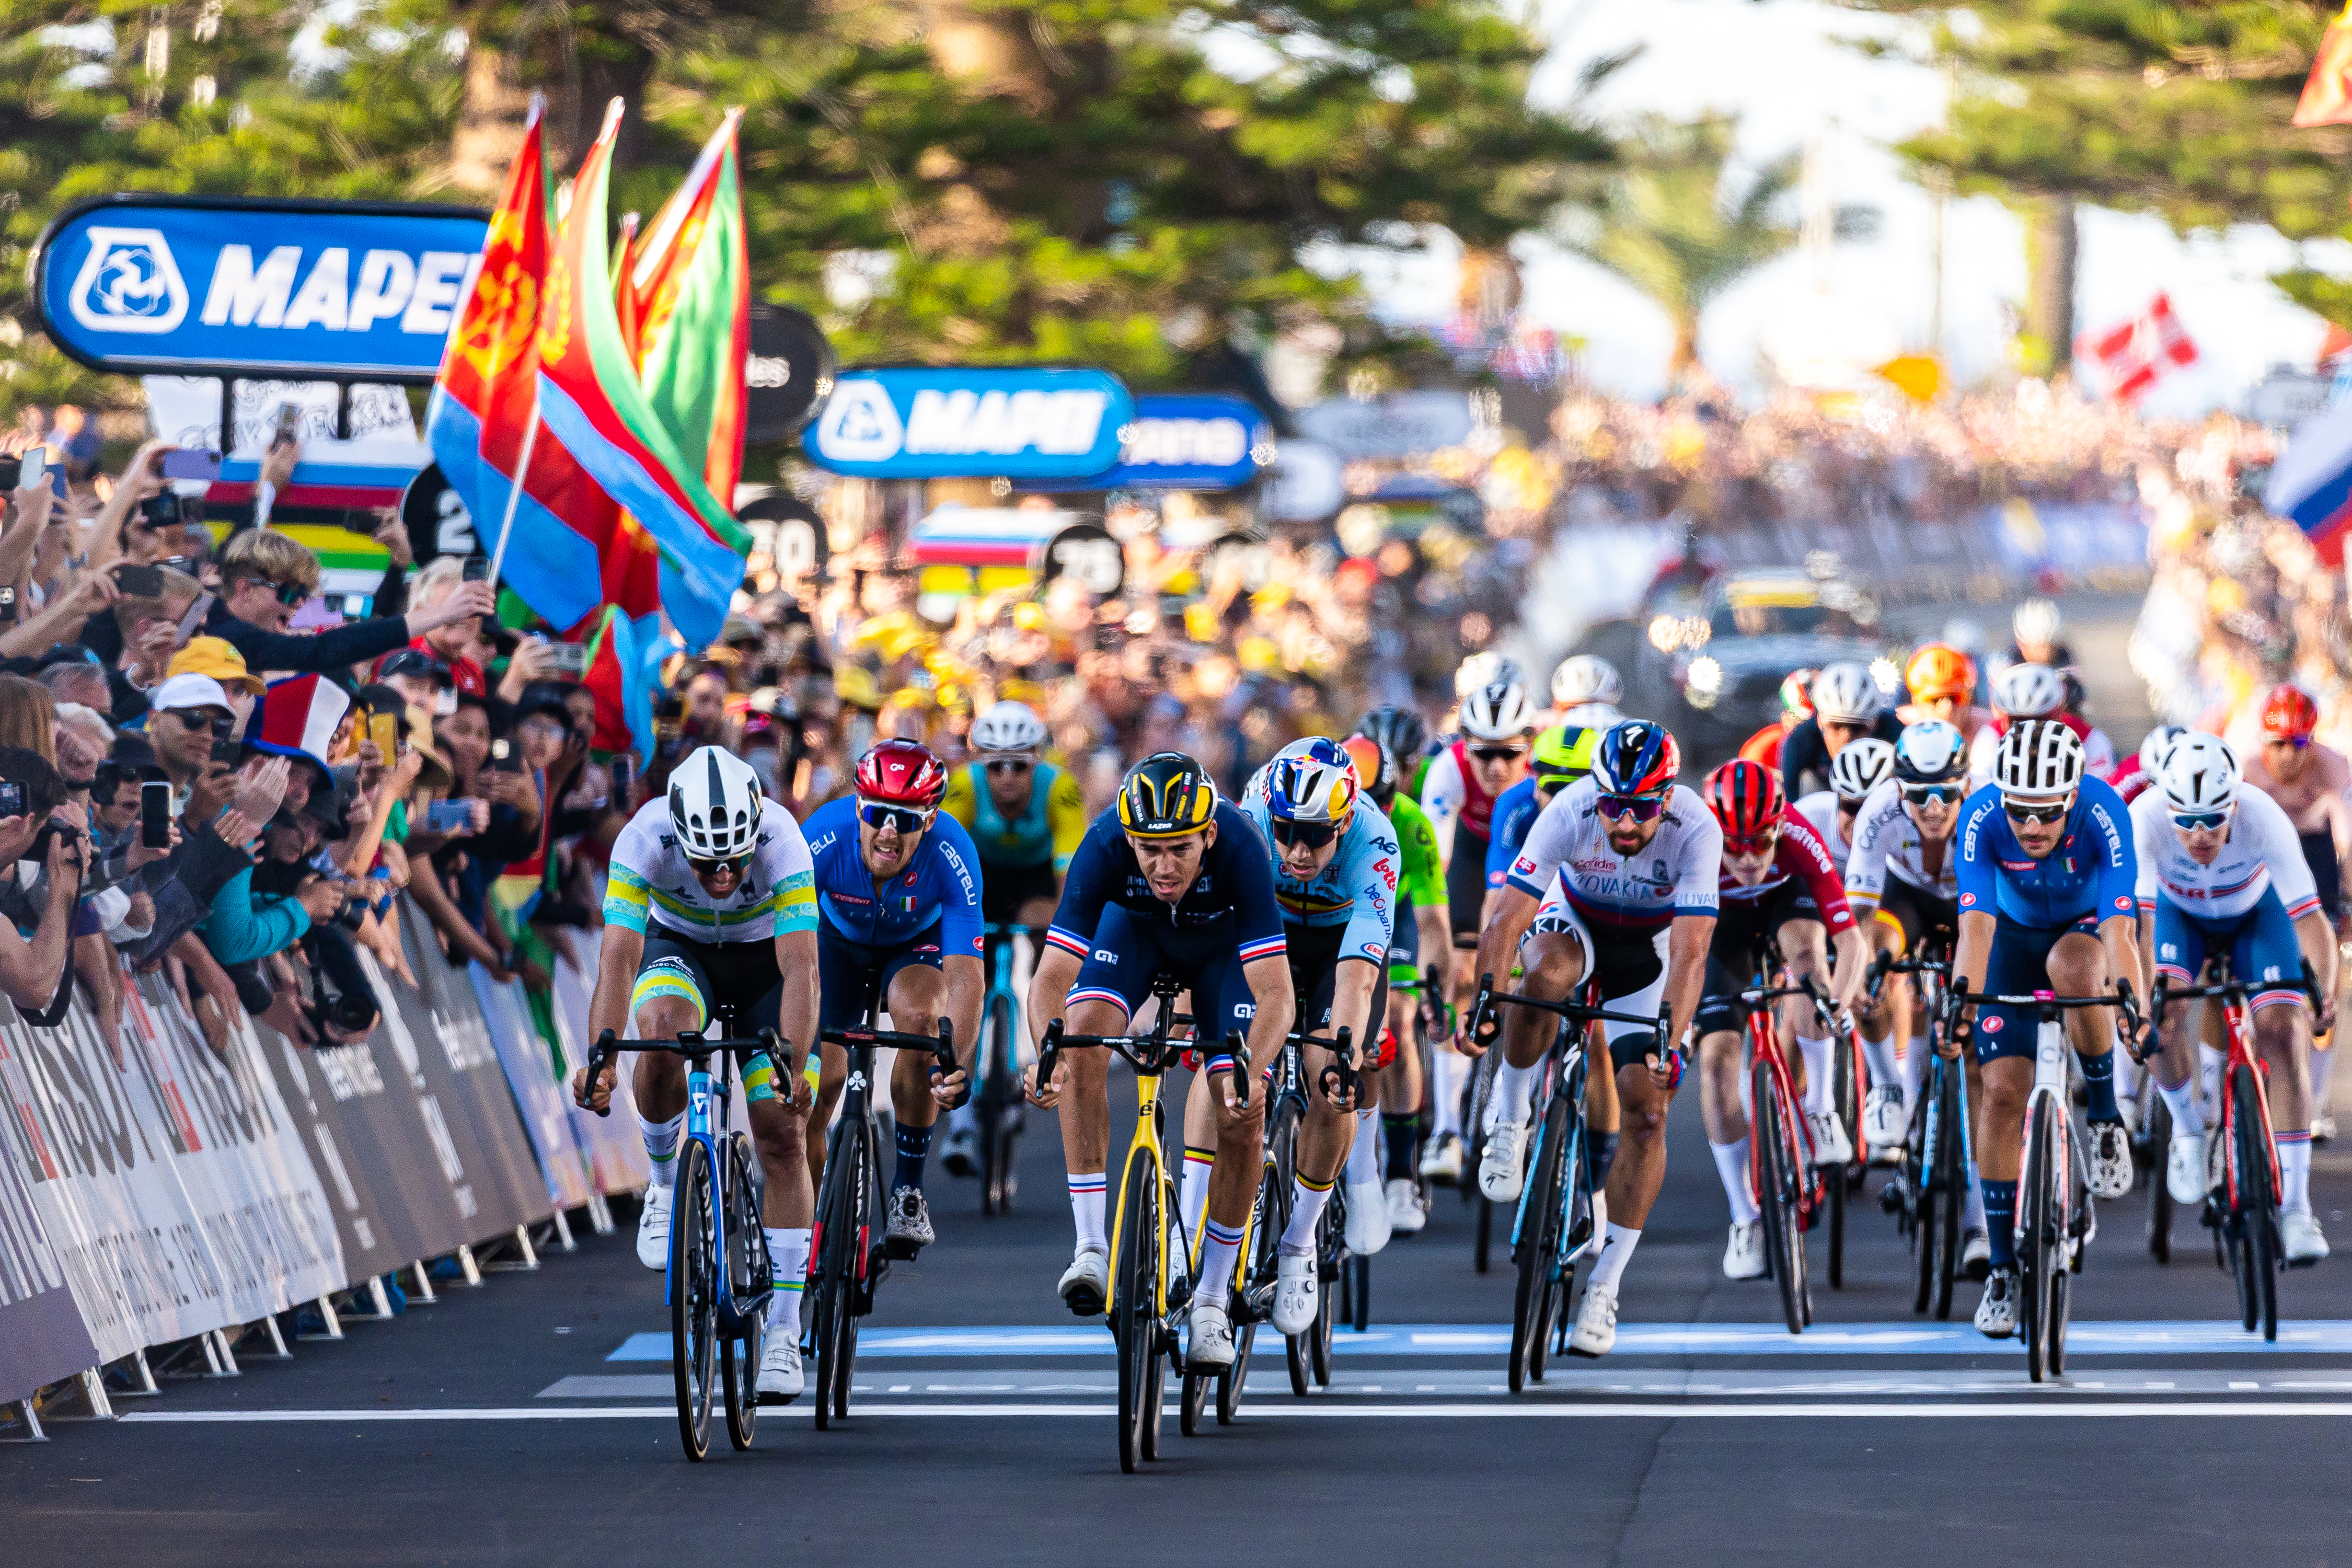 2023 UCI CYCLING WORLD CHAMPIONSHIPS